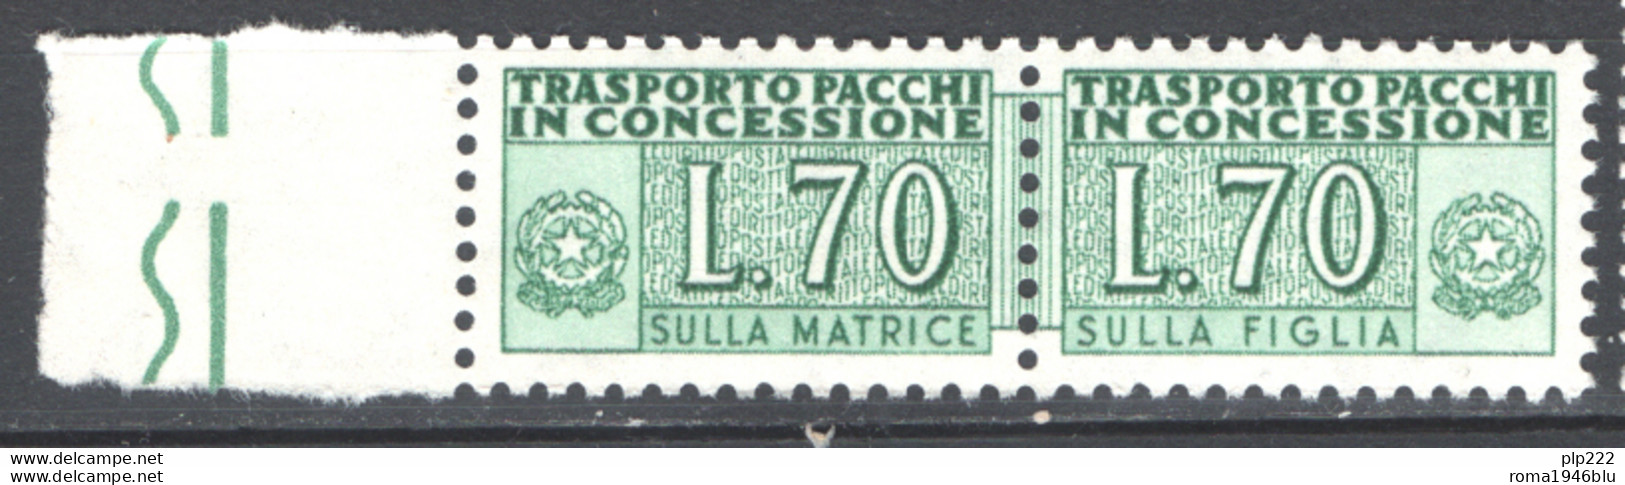 Italia Repubblica 1966 Pacchi In Concessione 70 Â£ Sass. PPC 8 **/MNH VF - Colis-concession